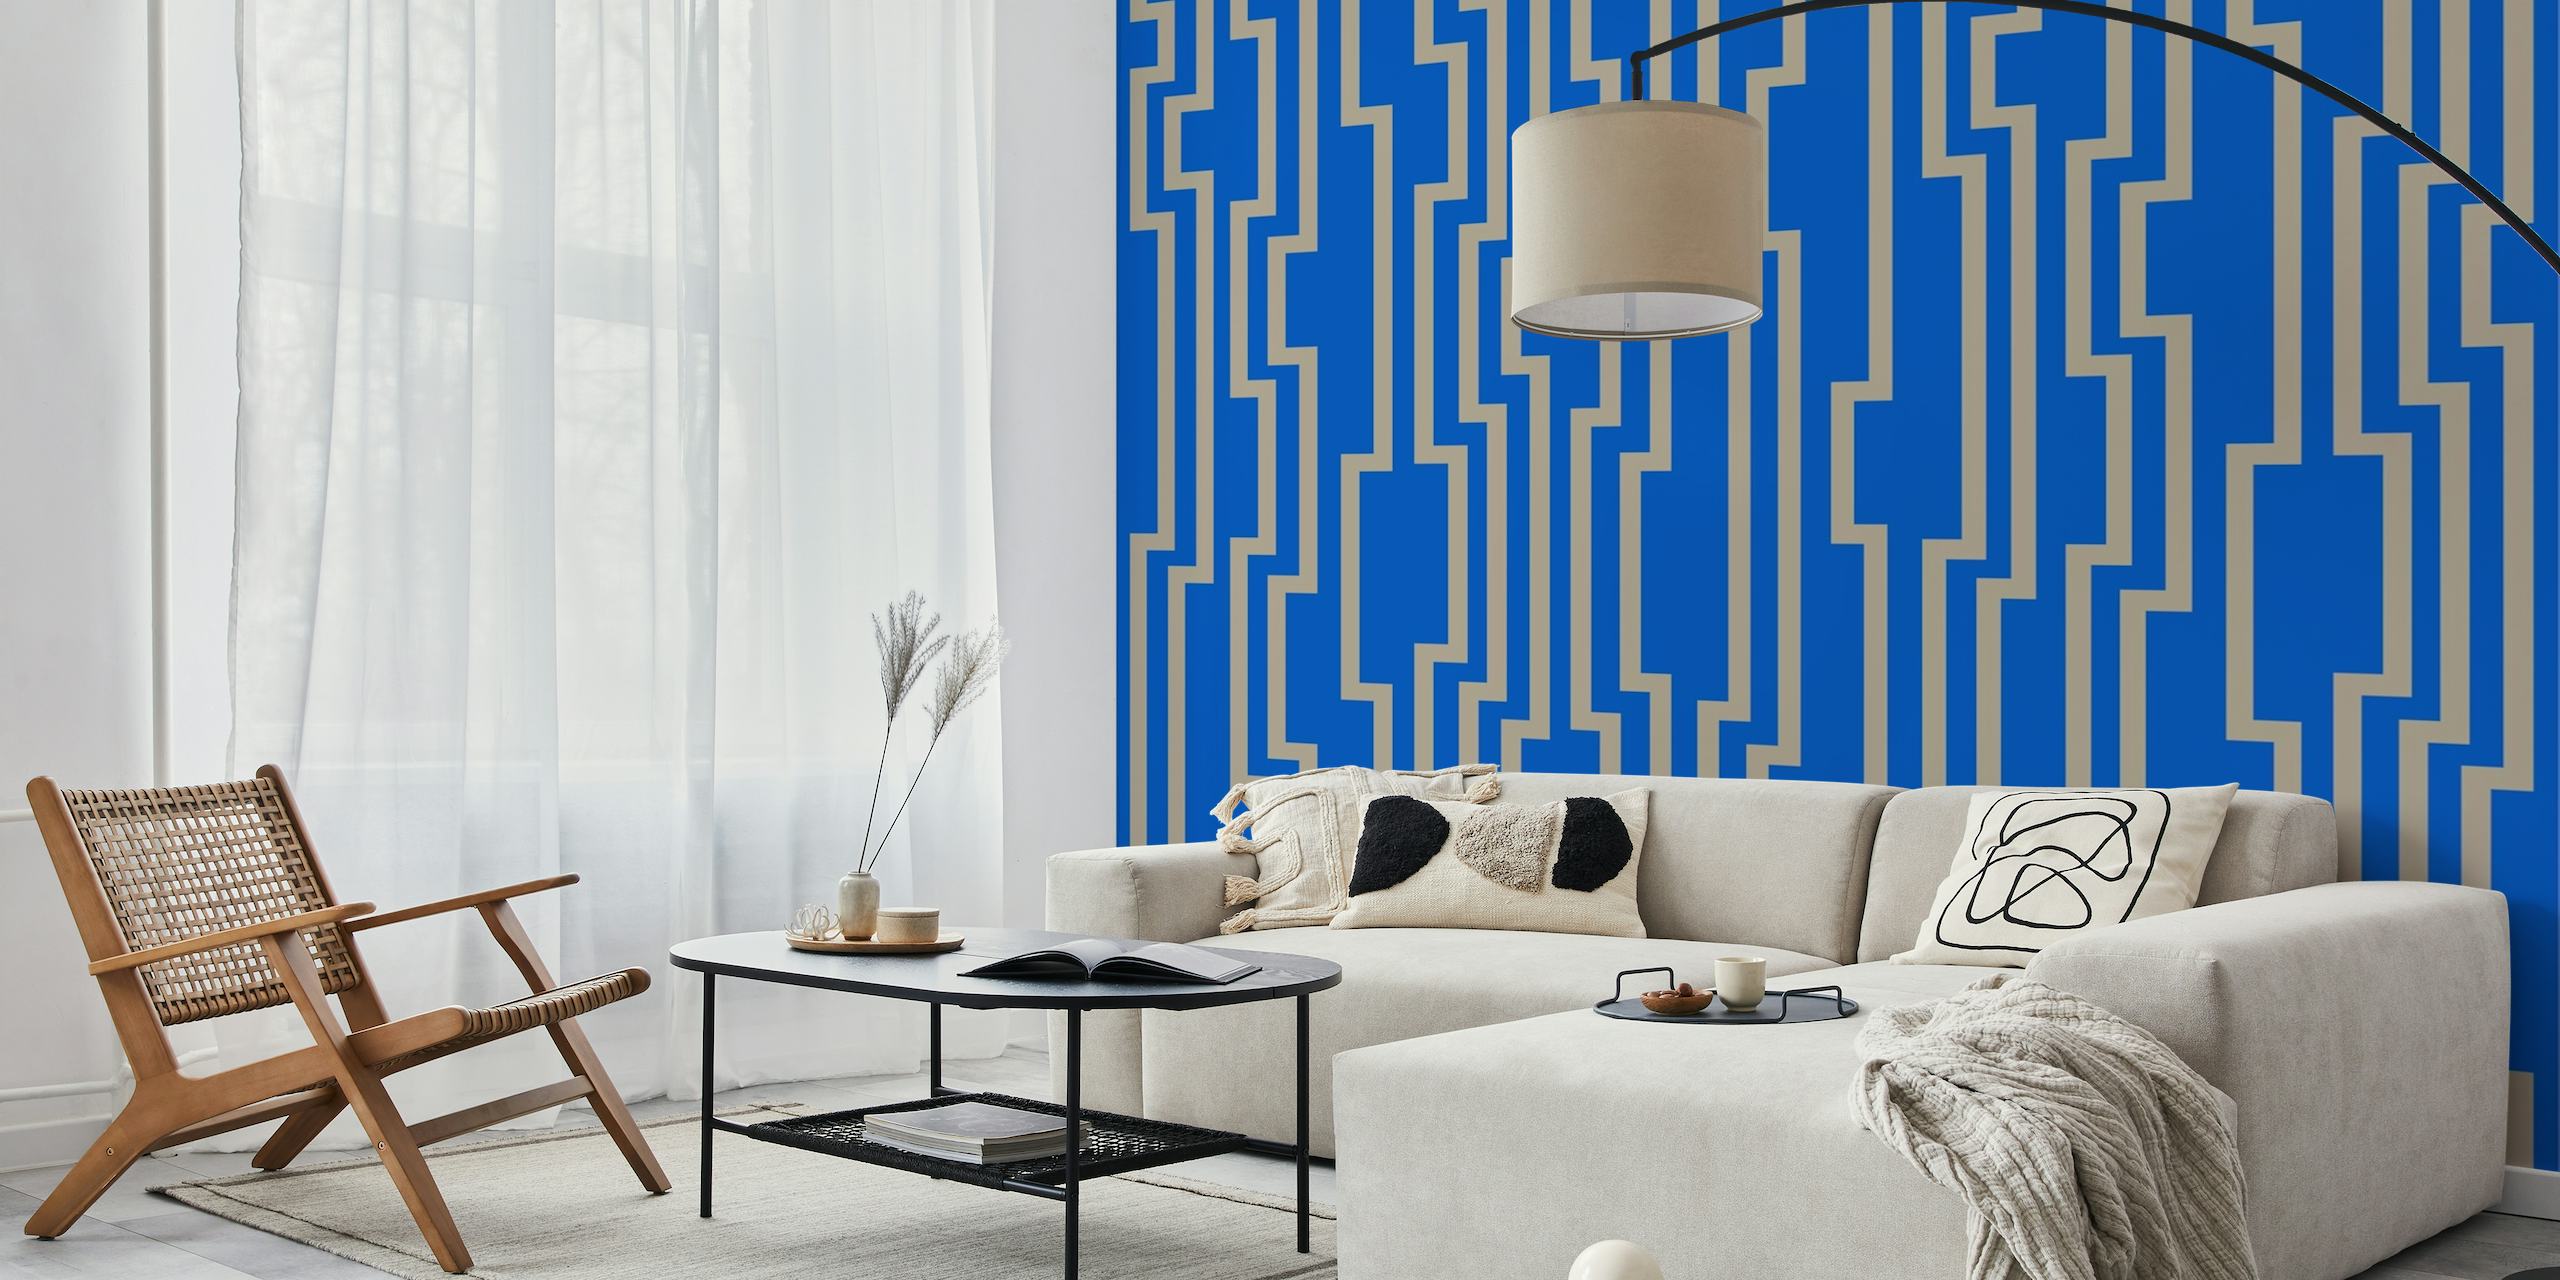 Fotomural de rayas geométricas en zigzag en colores tostado y azul.